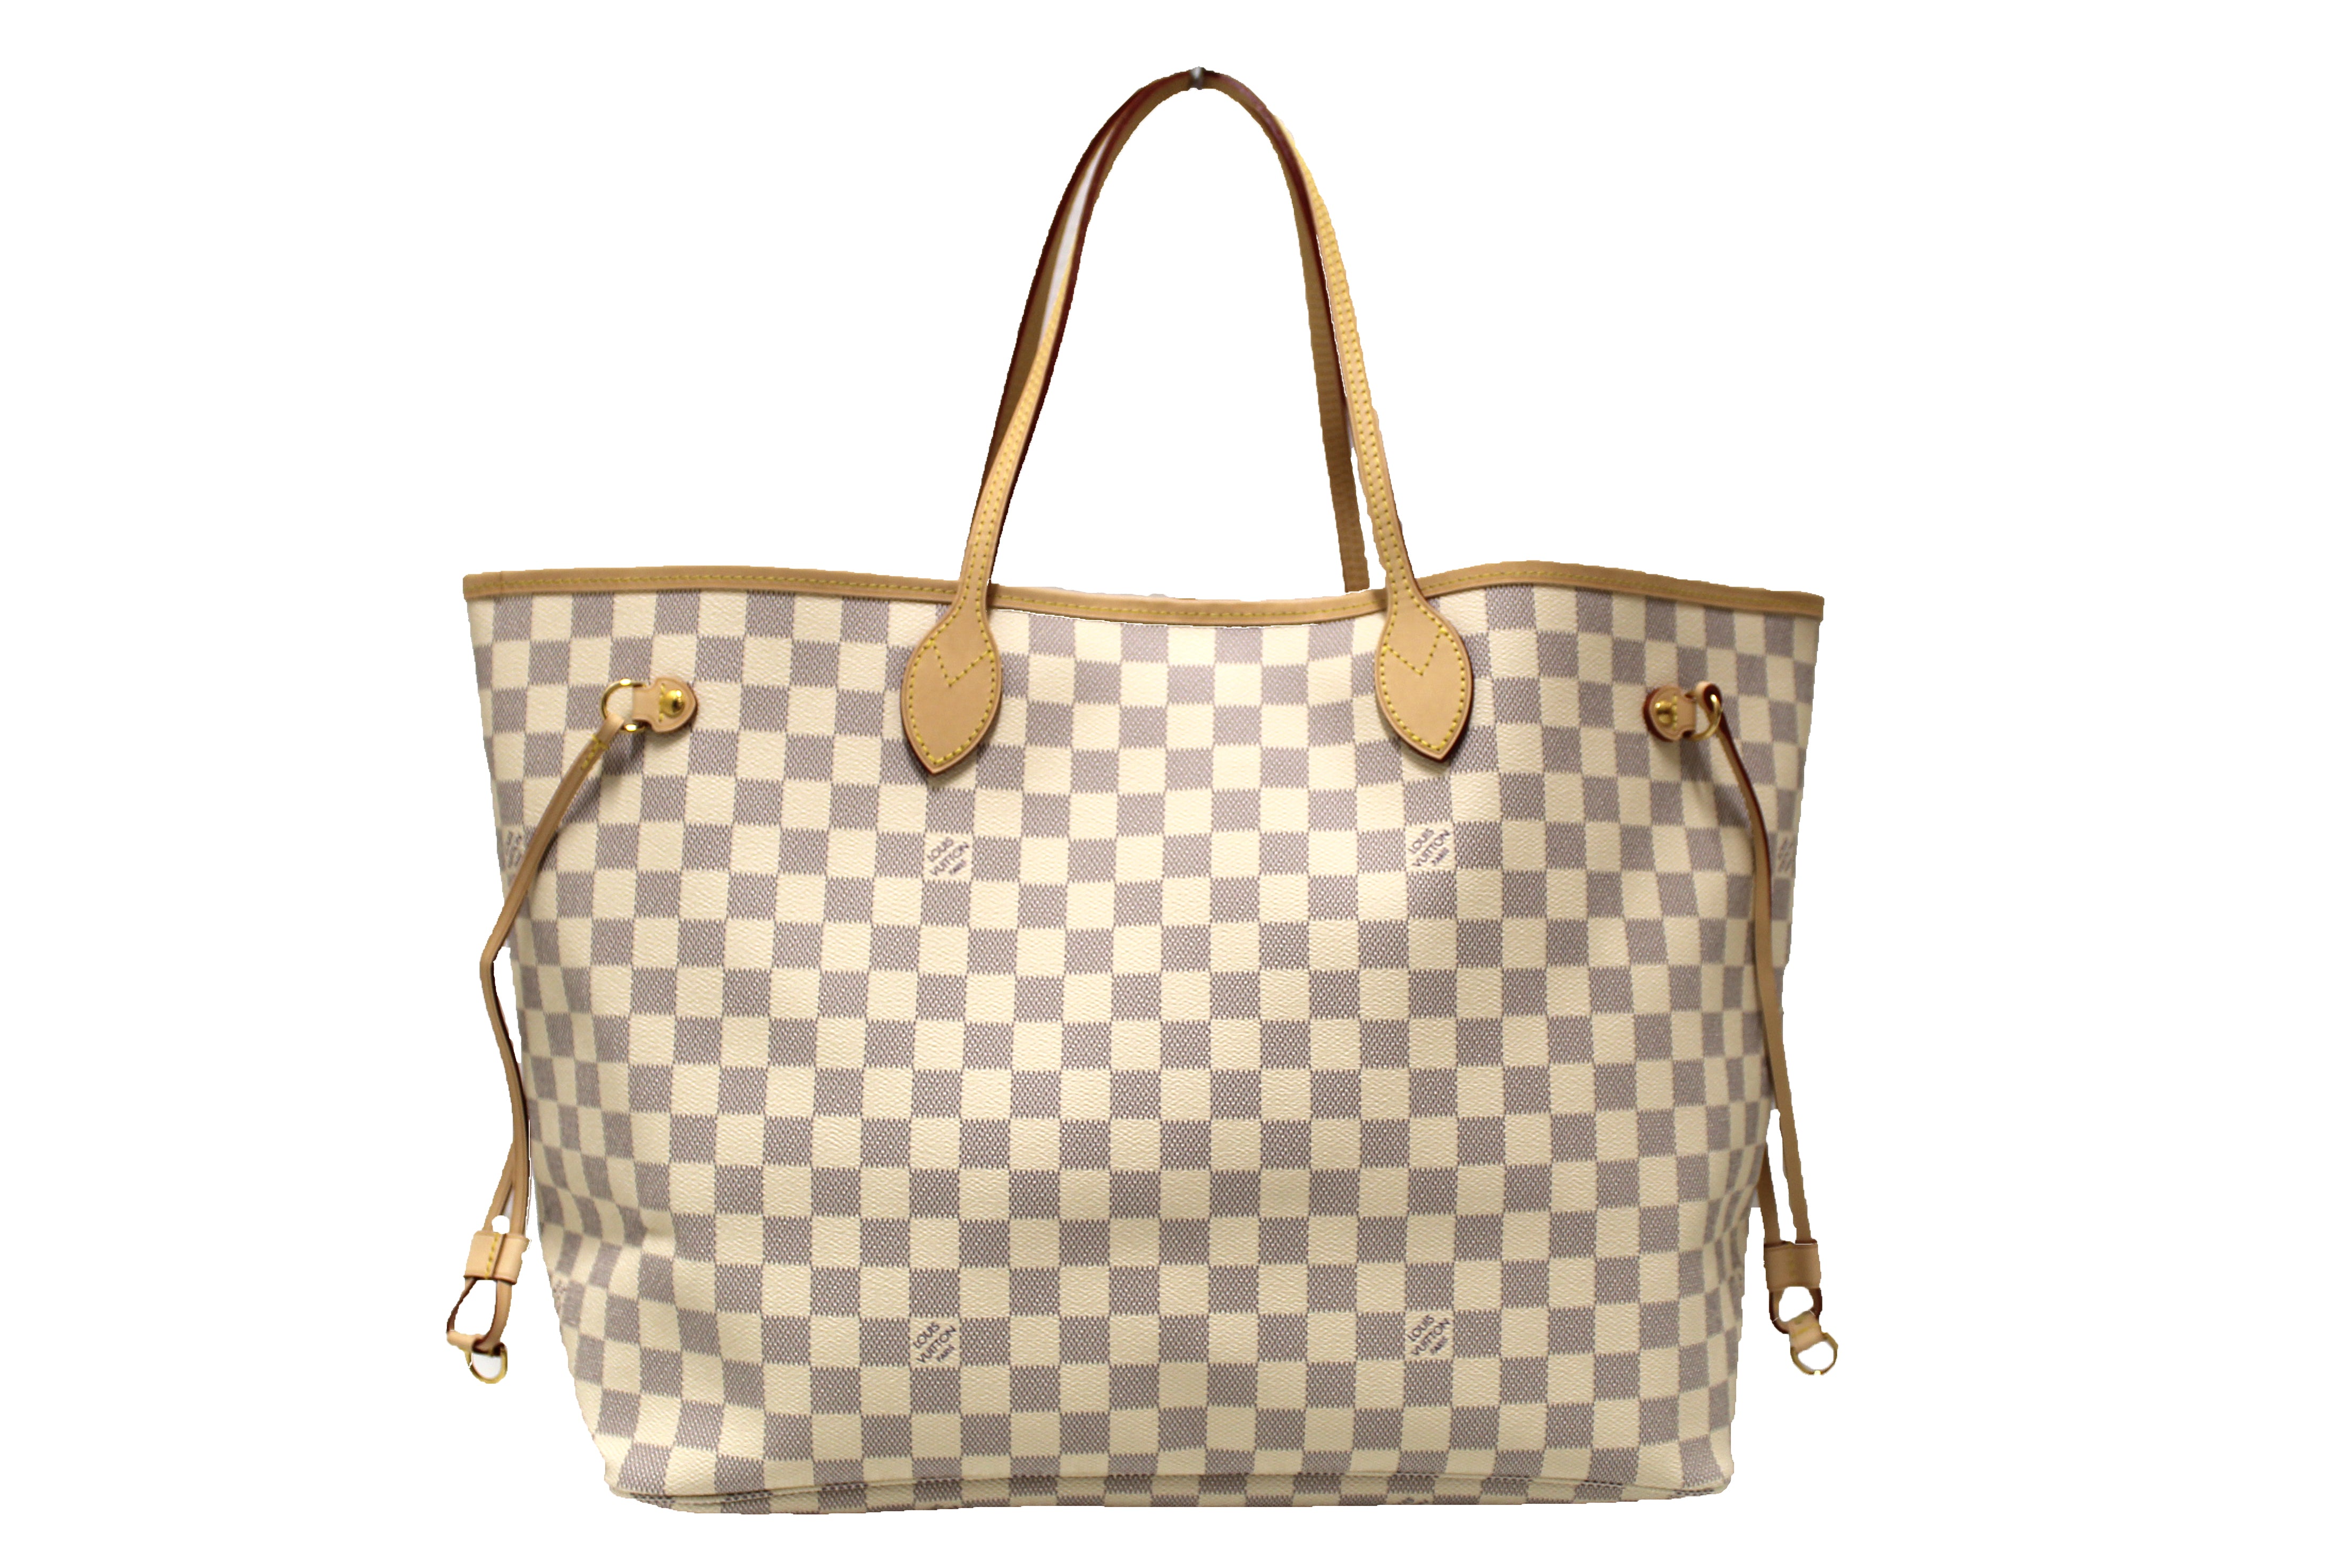 Authentic Louis Vuitton Damier Azur Neverfull PM Shoulder Tote Bag #17923